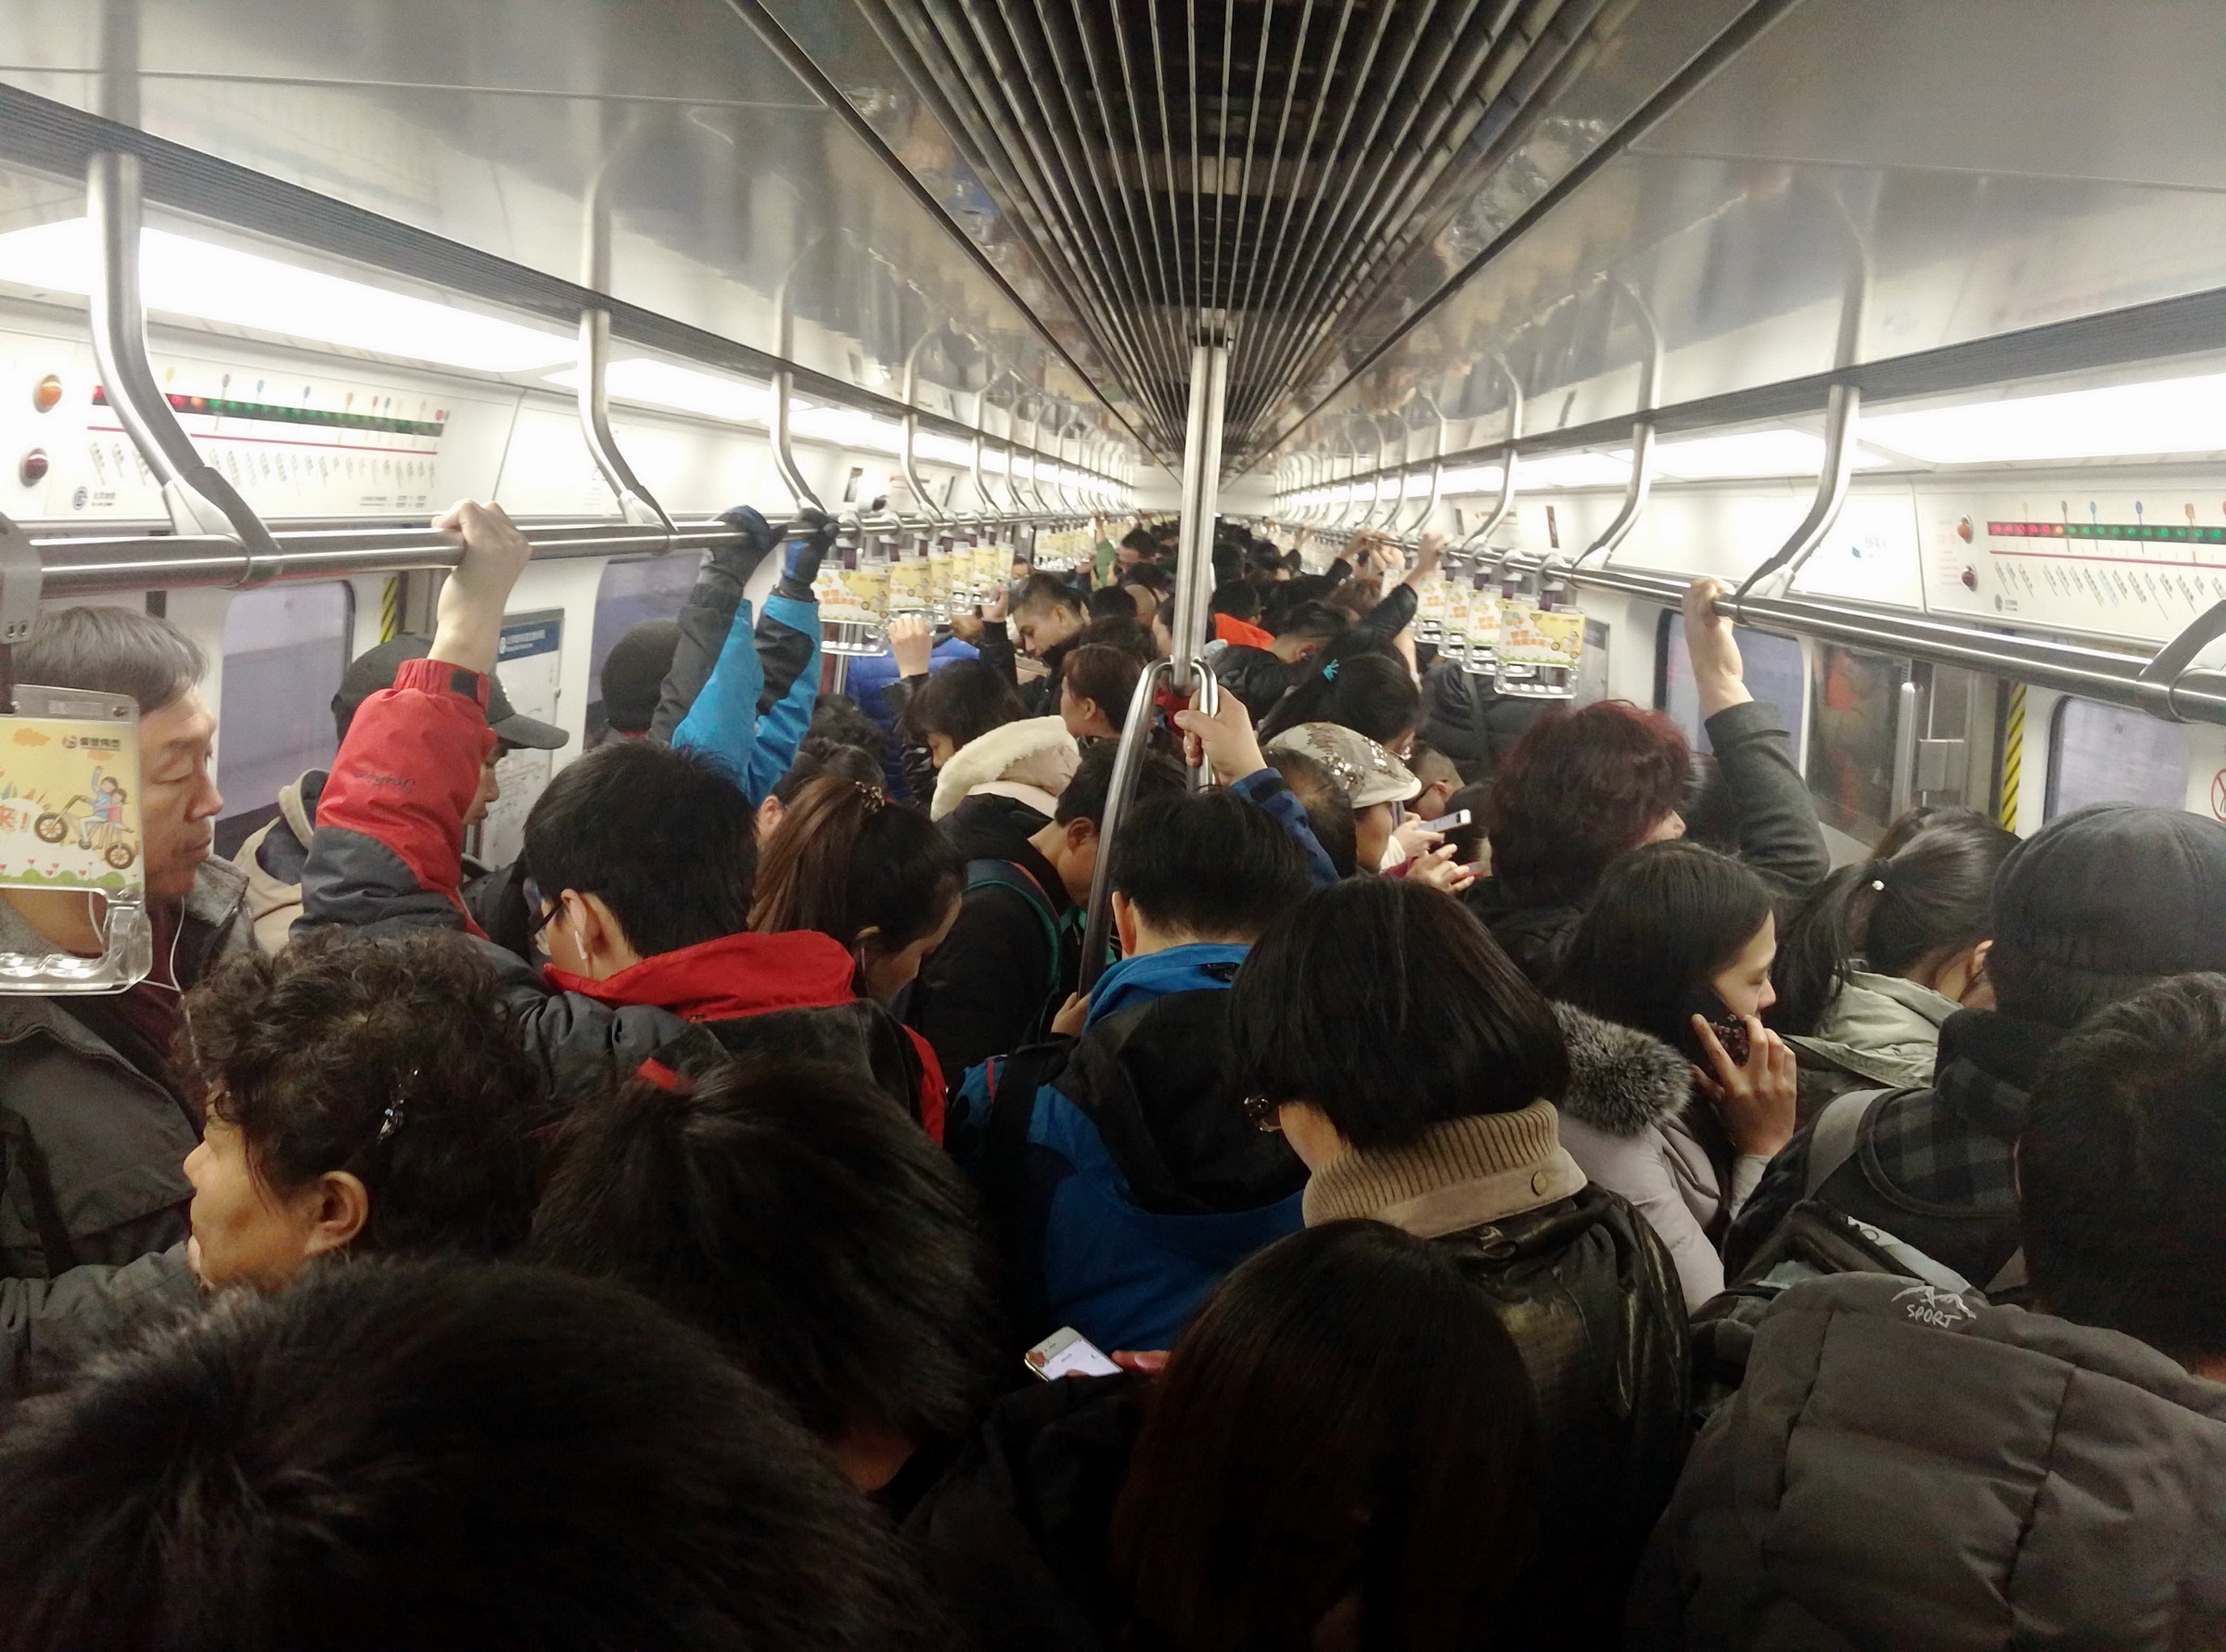 坐地铁北京上海哪里更拥挤?北京坐地铁的没有胖子,因为挤不上去